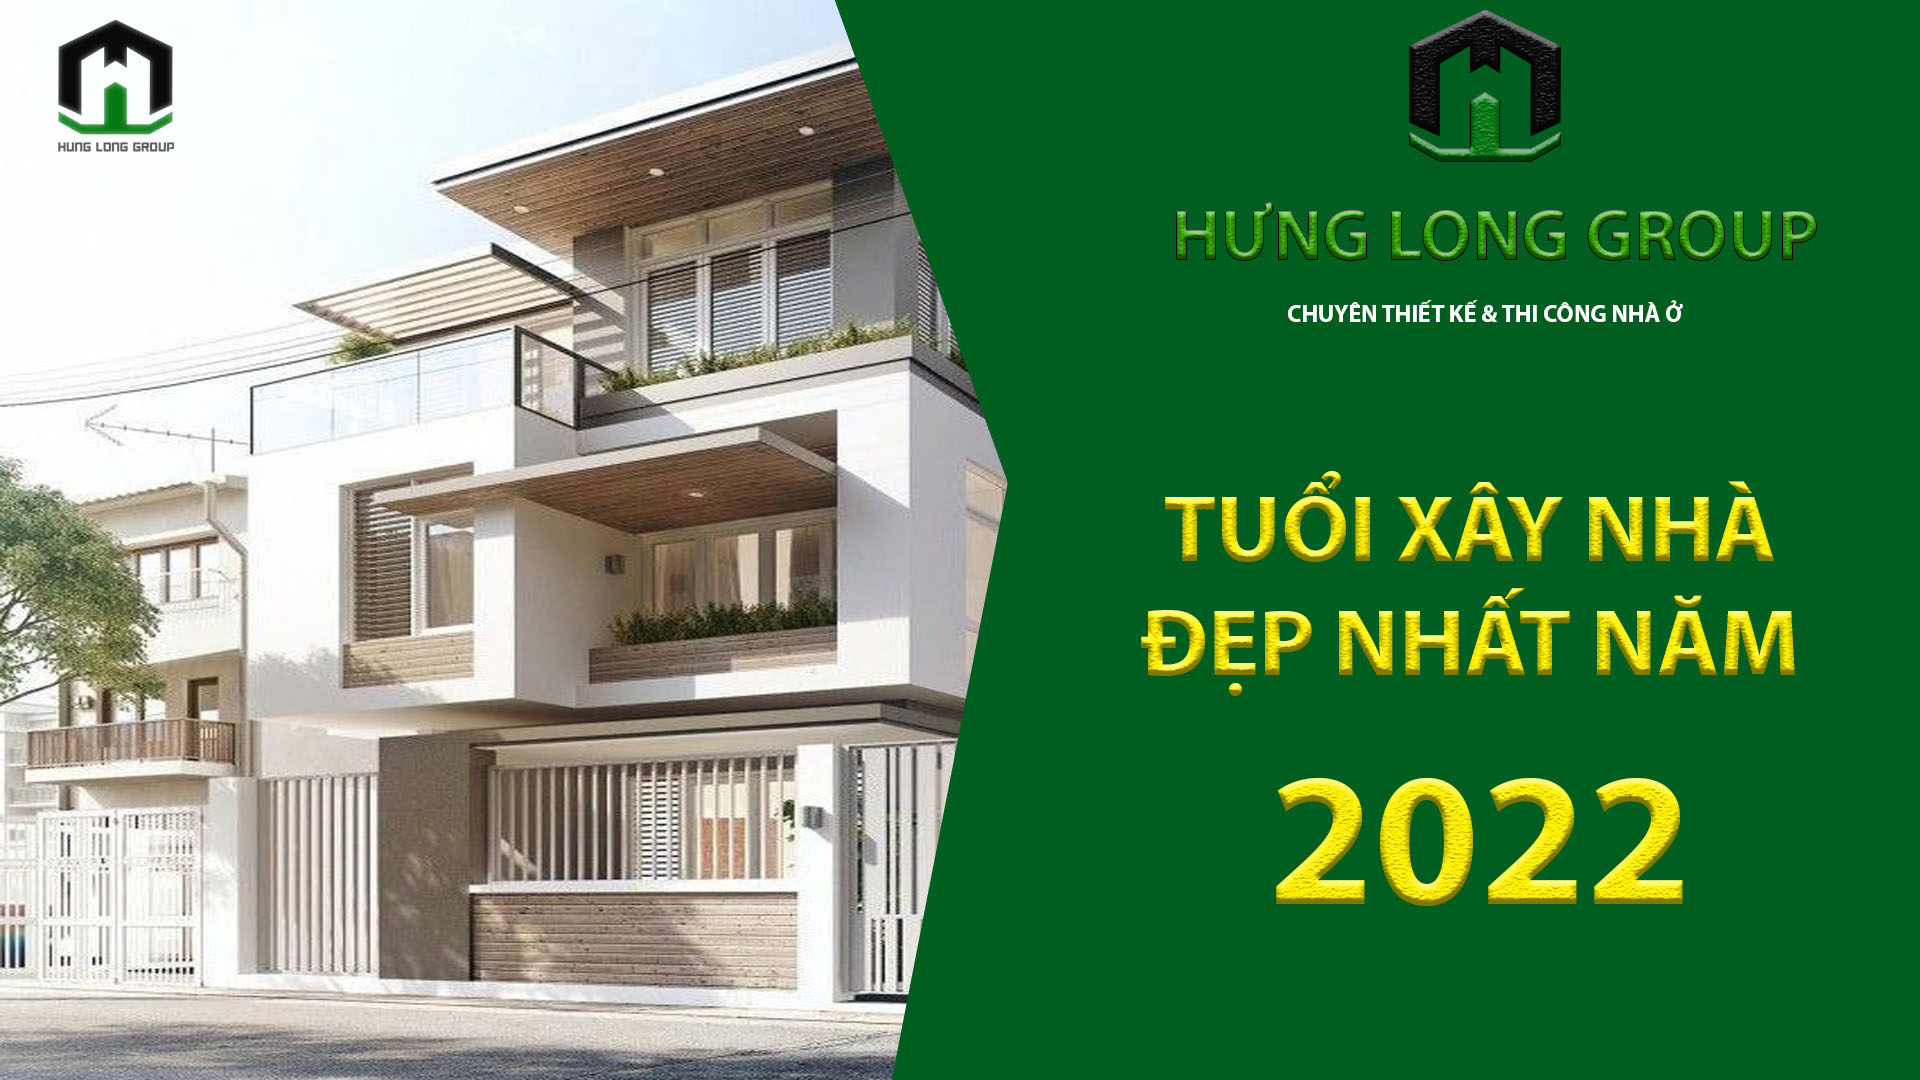 Tuổi xây nhà đẹp nhất năm 2022